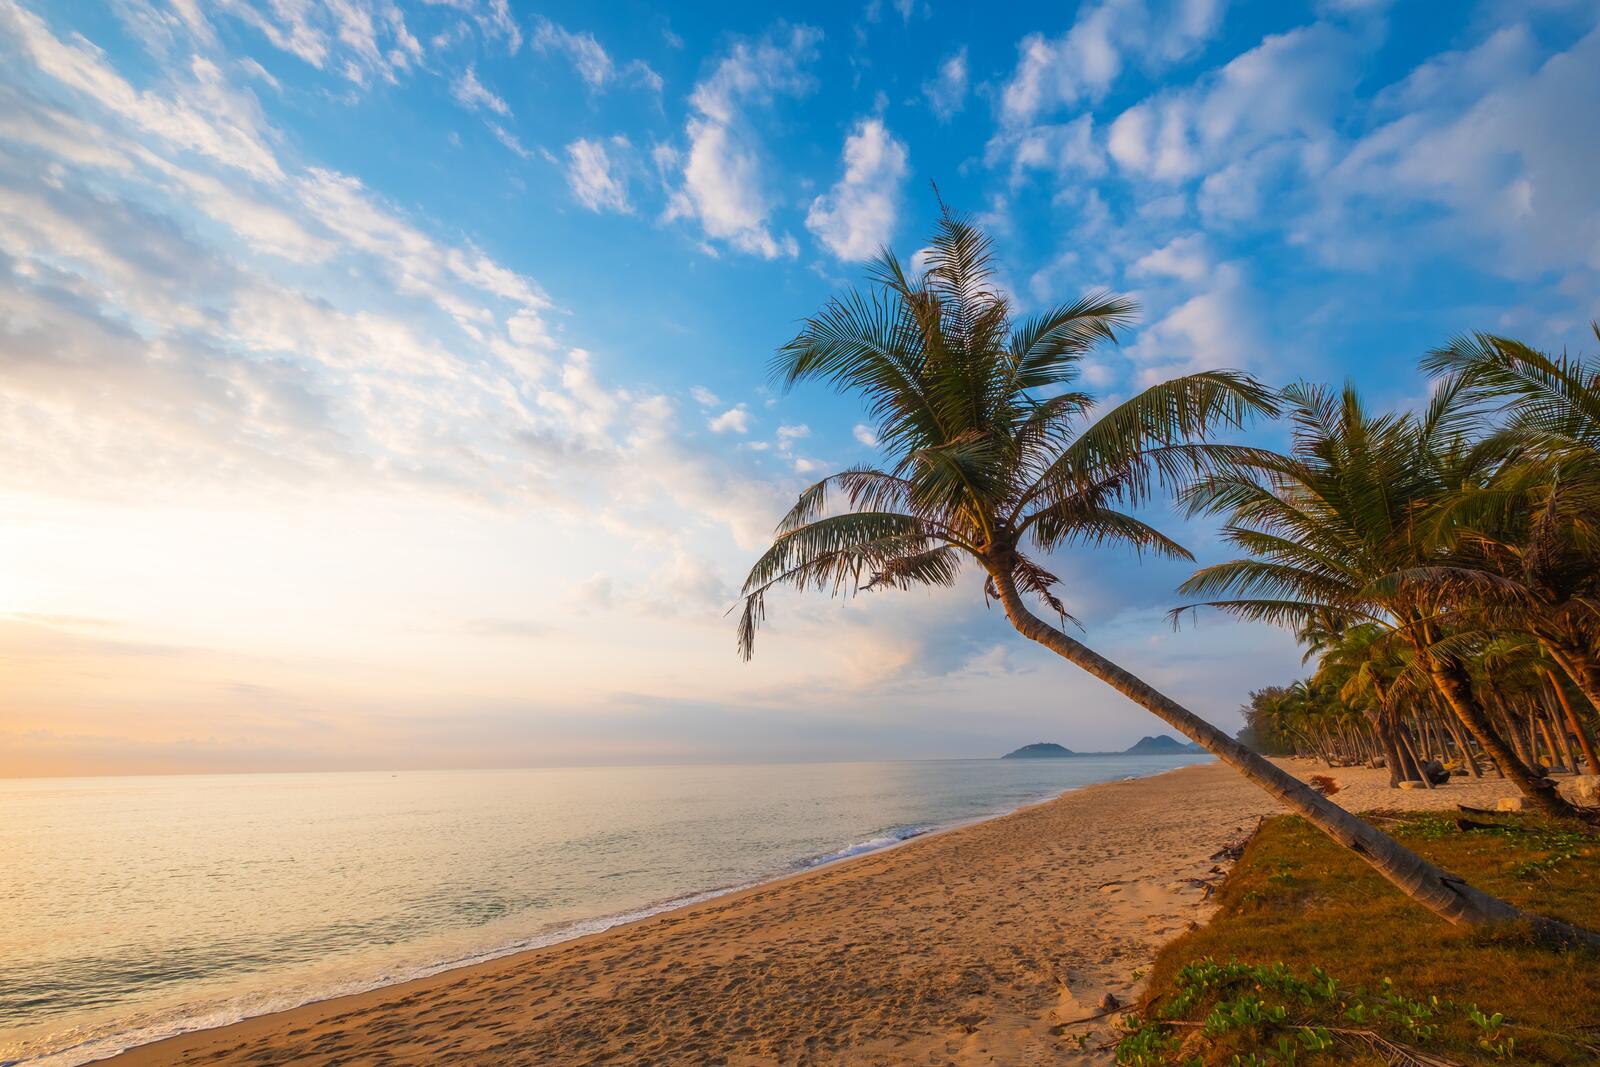 Бесплатное фото Пляж с пальмами с жаркую погоду